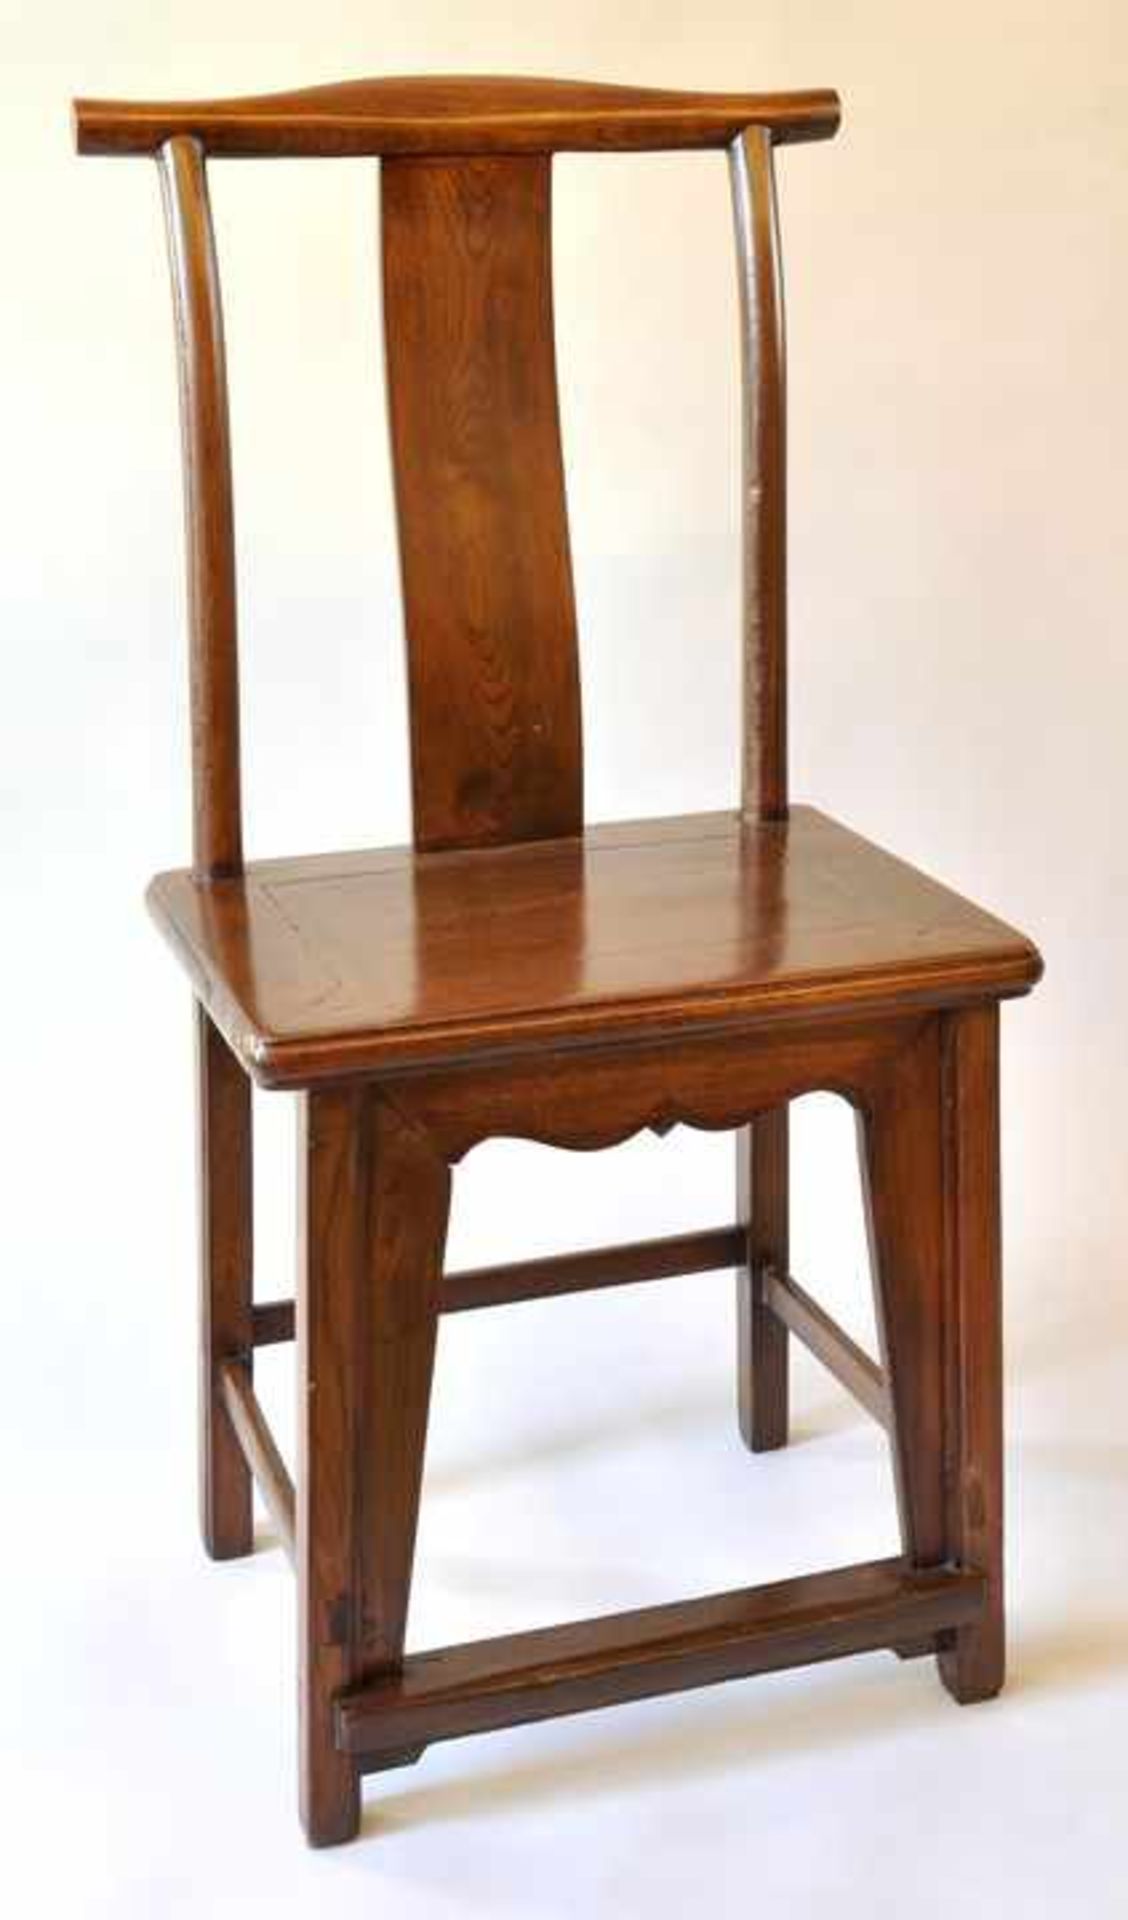 Stuhl, China, Laubholz, hellbraun, geschweifte Rückenlehne,H: 104 cm